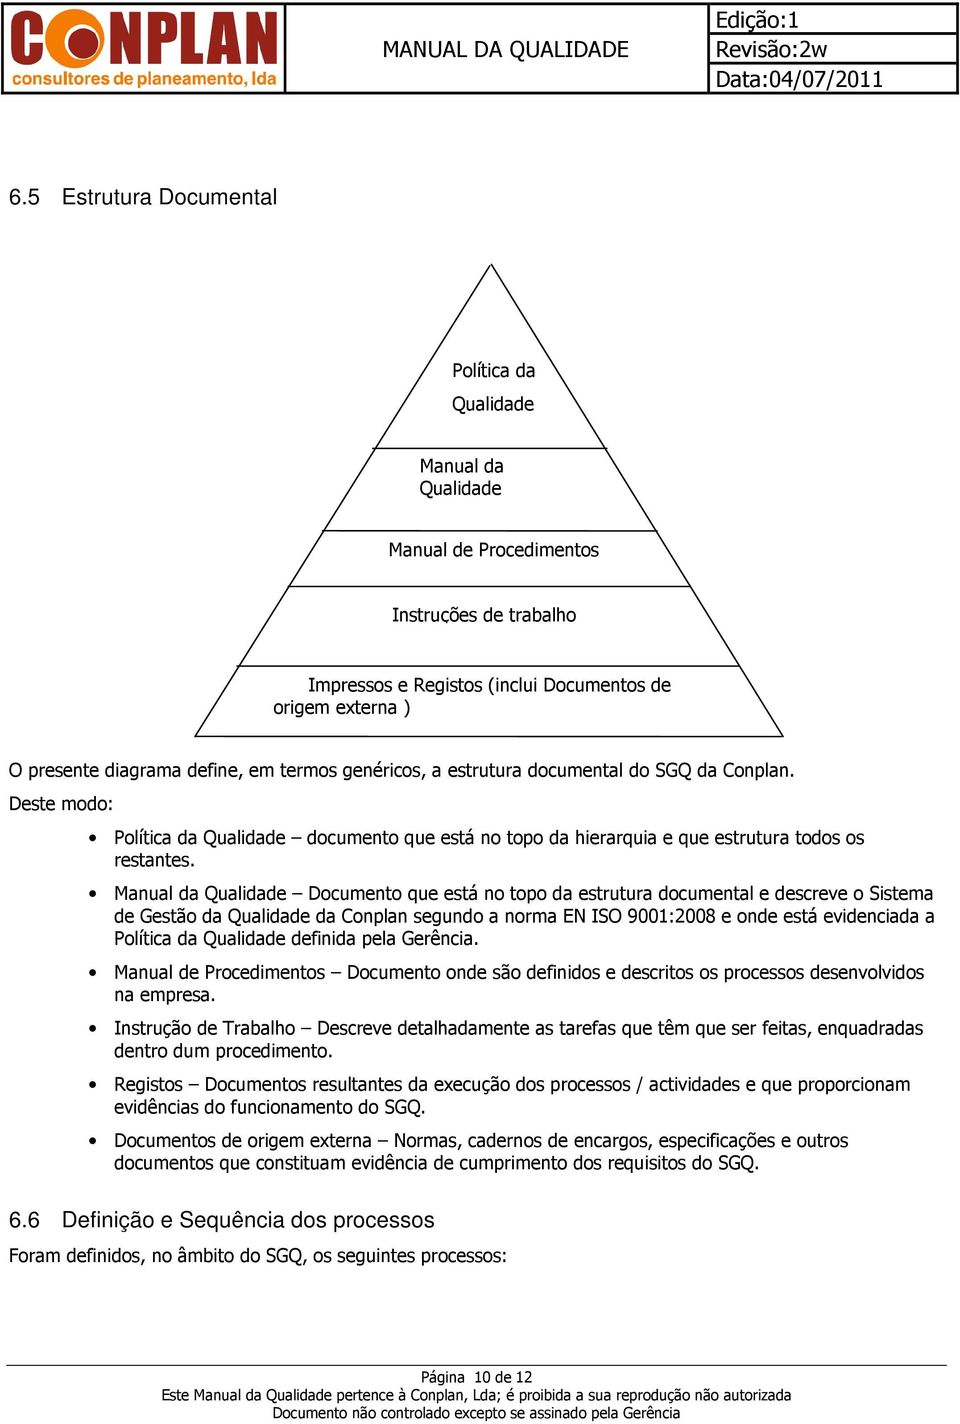 Manual da Qualidade Documento que está no topo da estrutura documental e descreve o Sistema de Gestão da Qualidade da Conplan segundo a norma EN ISO 9001:2008 e onde está evidenciada a Política da